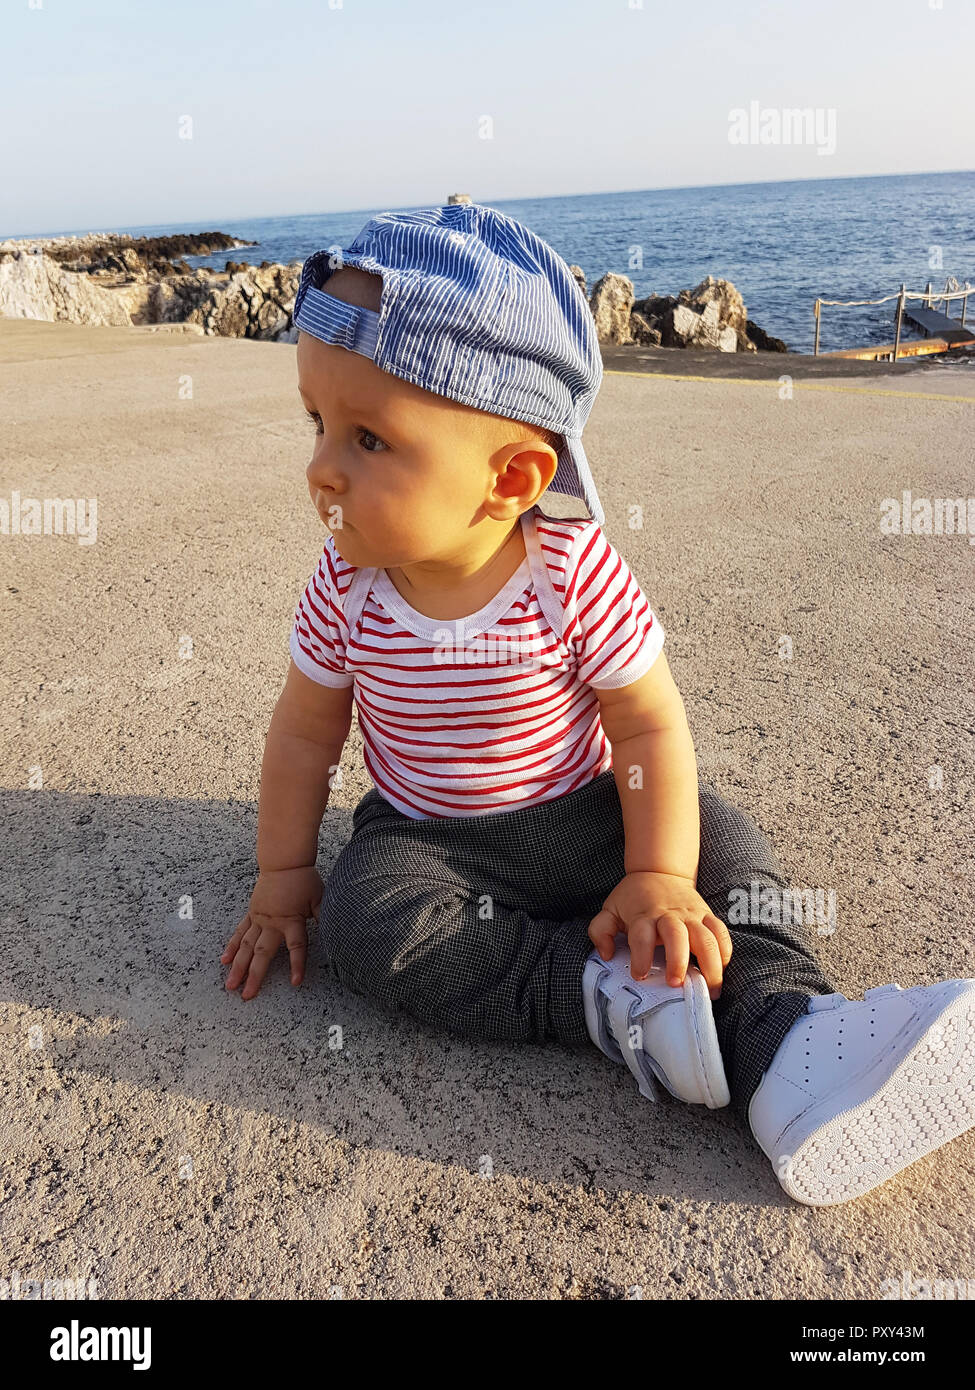 Mignon Bébé Garçon 1 ans portant une casquette à l'envers et les vêtements  à rayures, Portrait. La mer Méditerranée en arrière-plan Photo Stock - Alamy